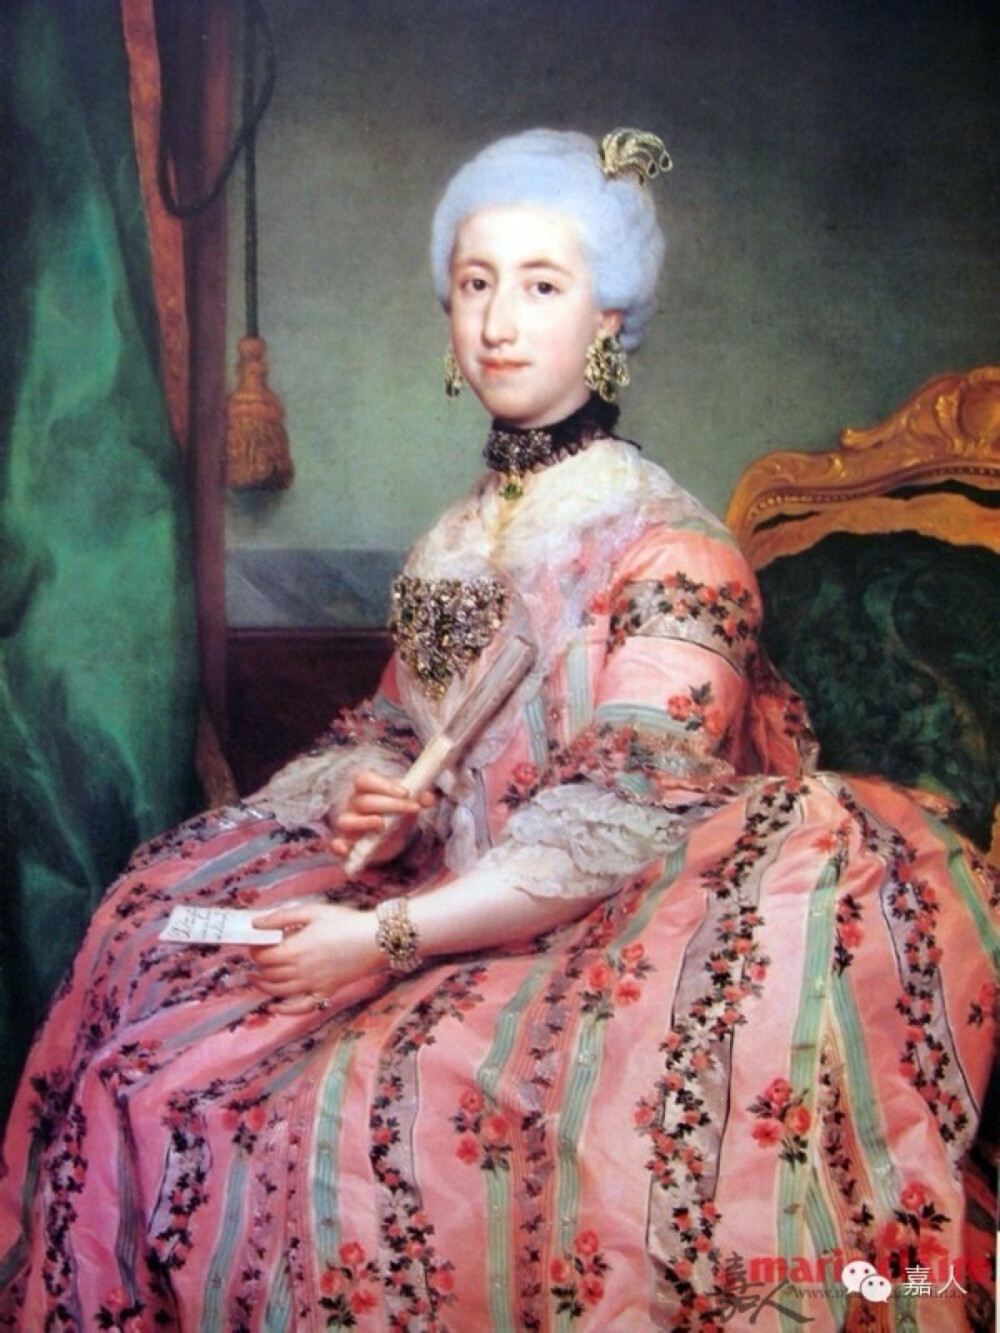 大名鼎鼎的玛丽·安托瓦内特,法国国王路易十六的妻子,原奥地利帝国